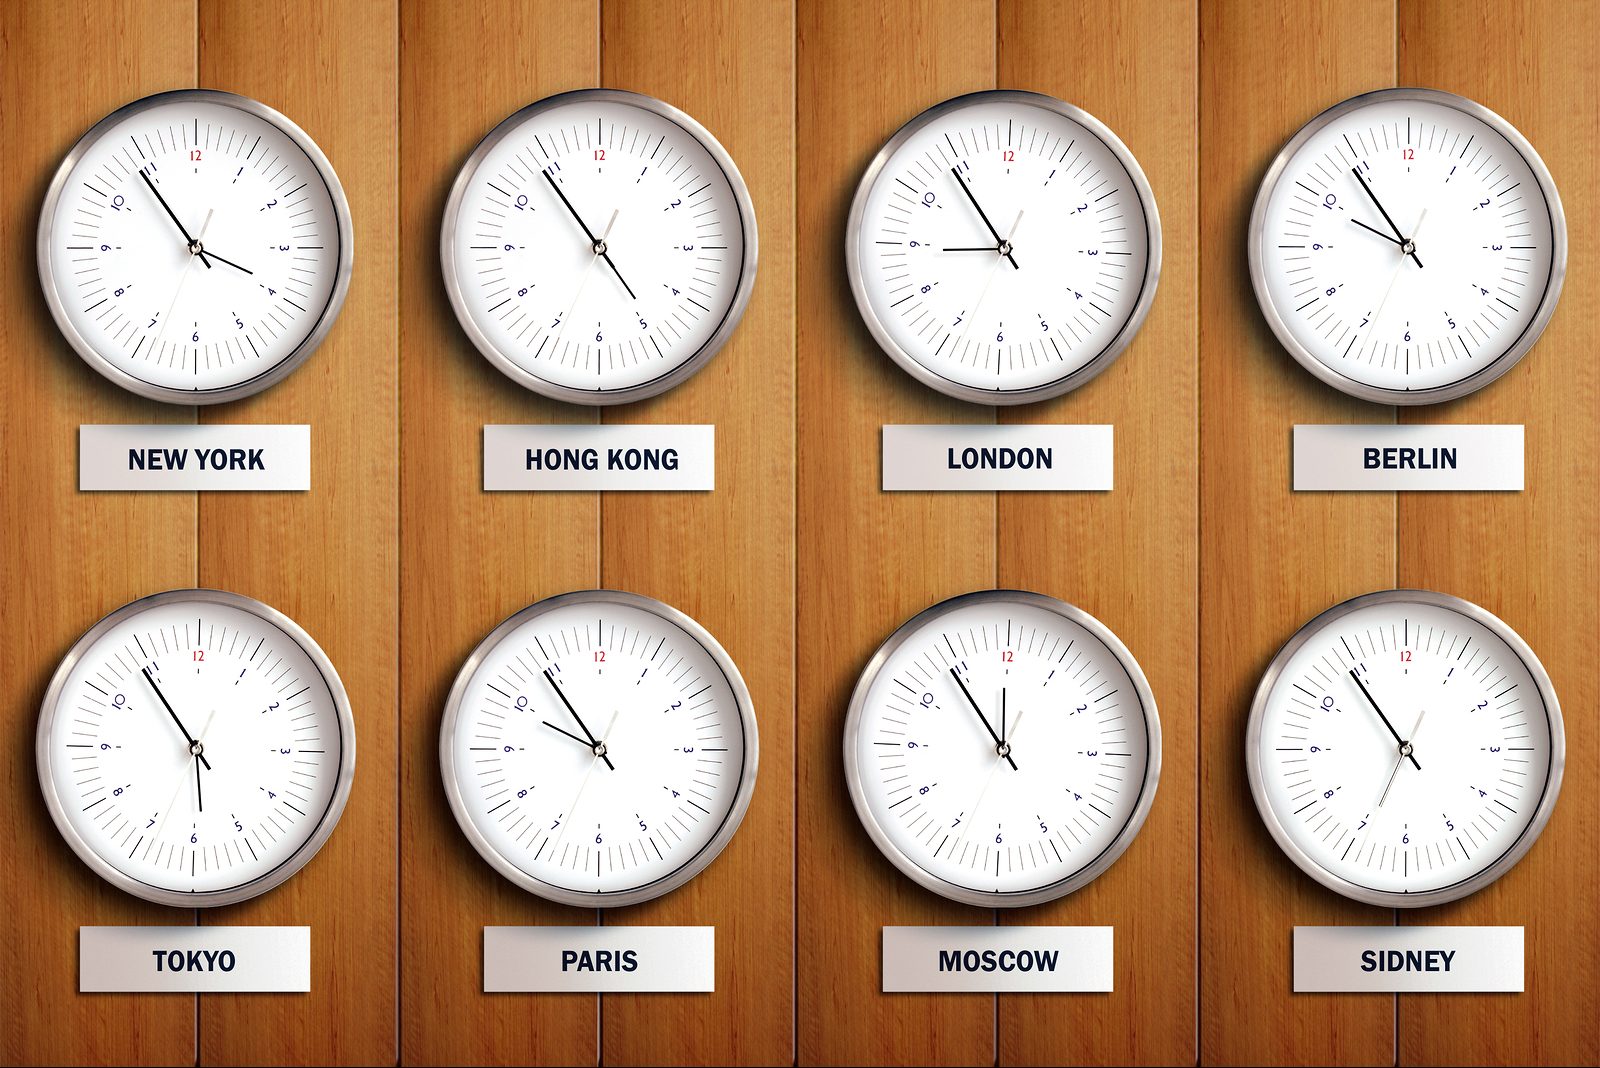 Разница во времени в странах. Часы с разным временем. Мировые часы настенные. Часы с часовыми поясами стран. Часы с городами разных часовых поясов.